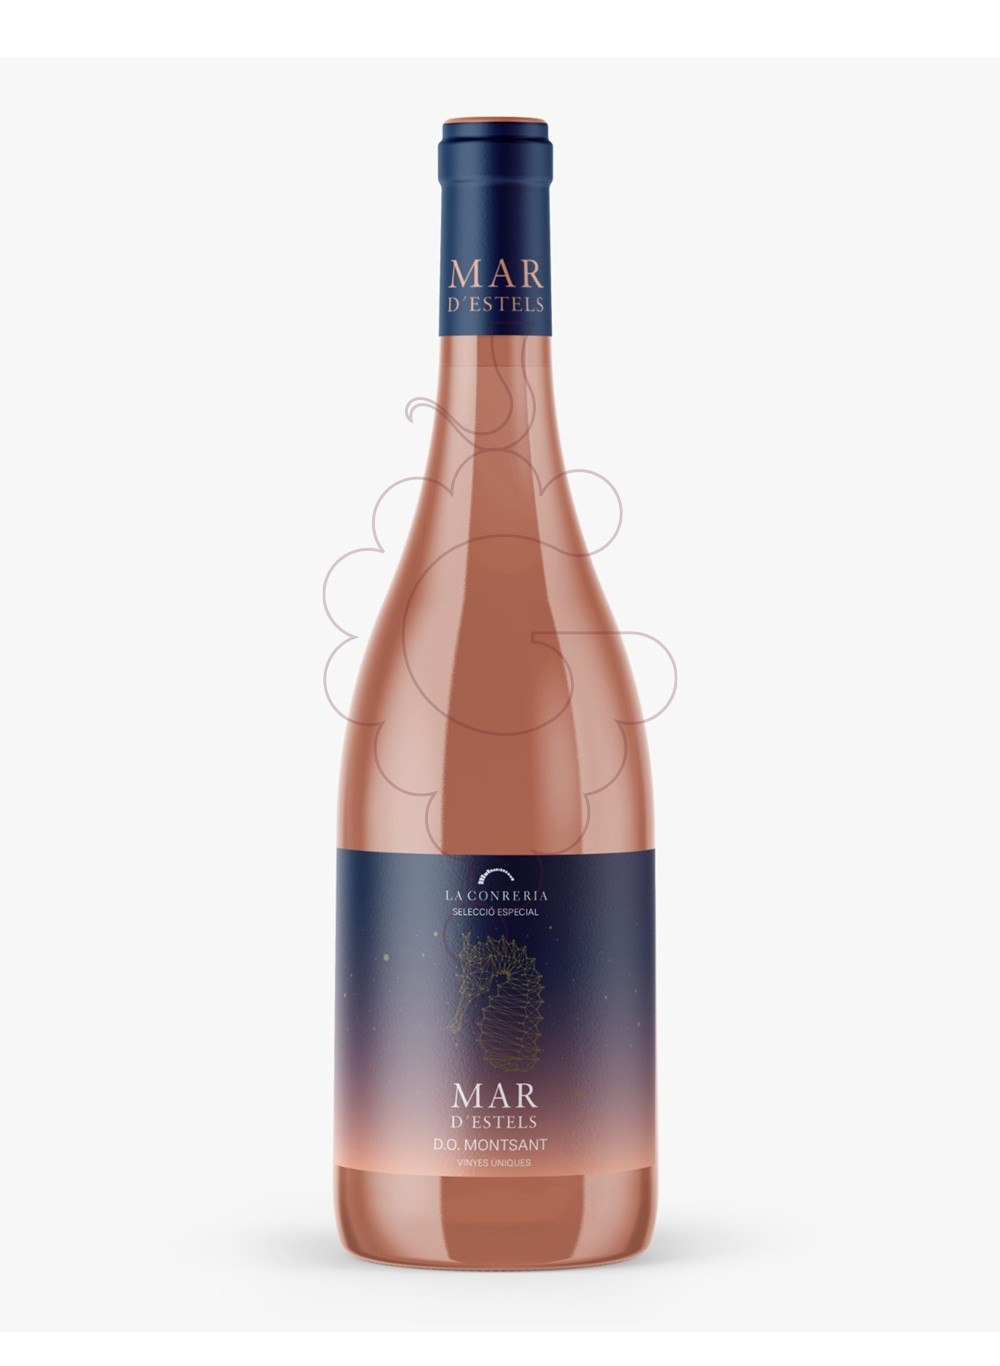 Photo Mar d'estels rosat 75 cl rosé wine